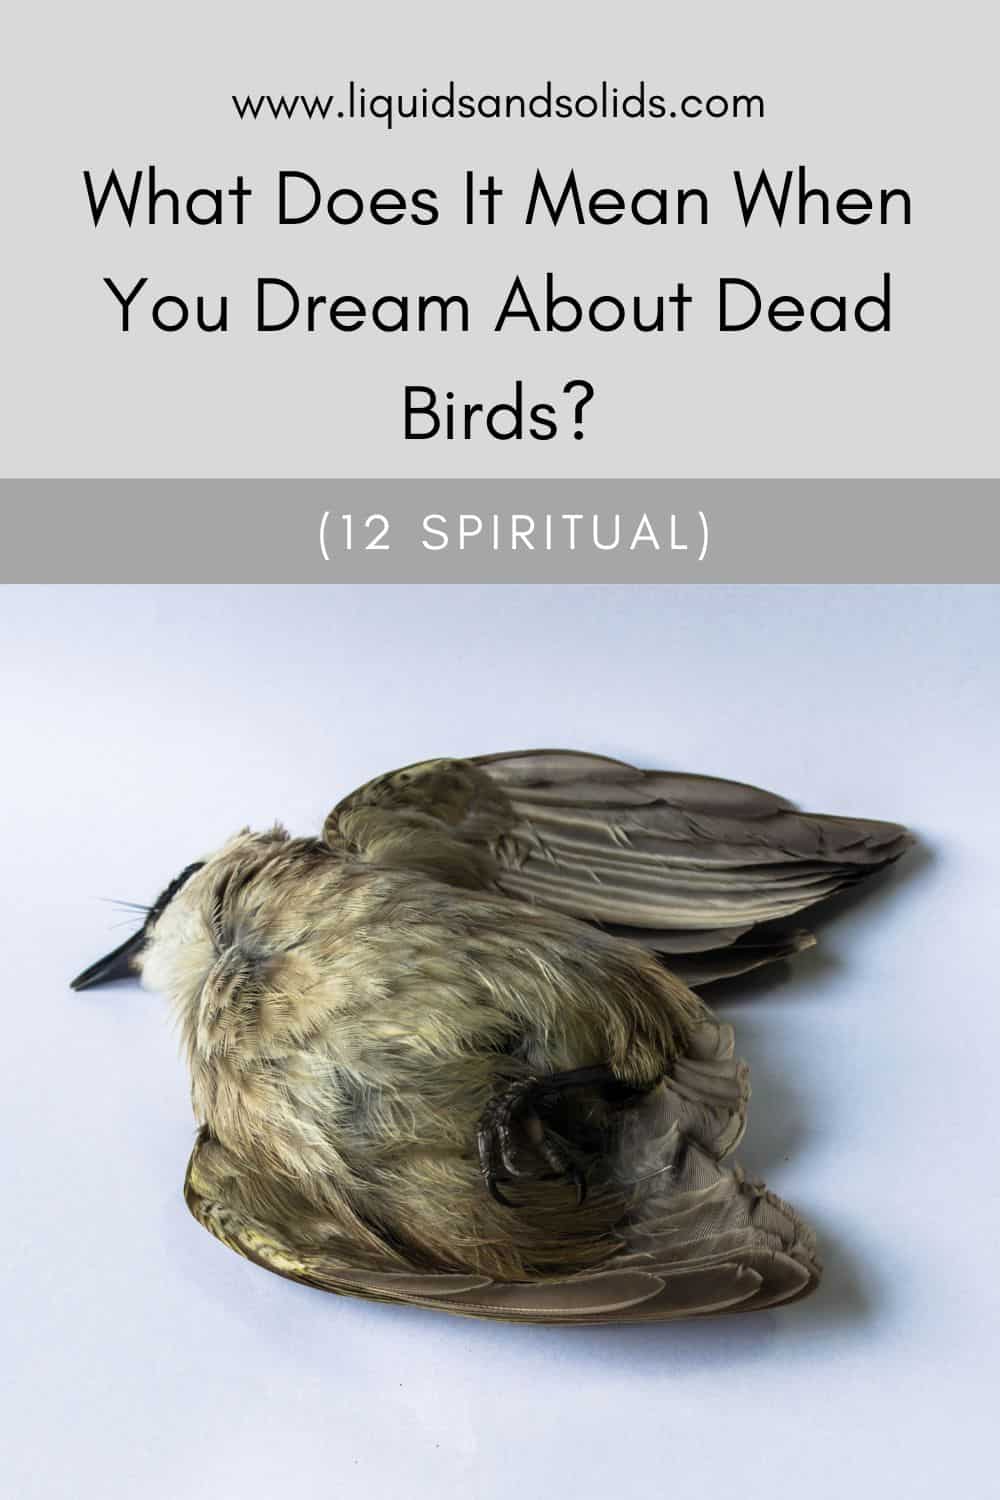  تفسير رؤية الطيور الميتة في المنام (12 معاني روحية)